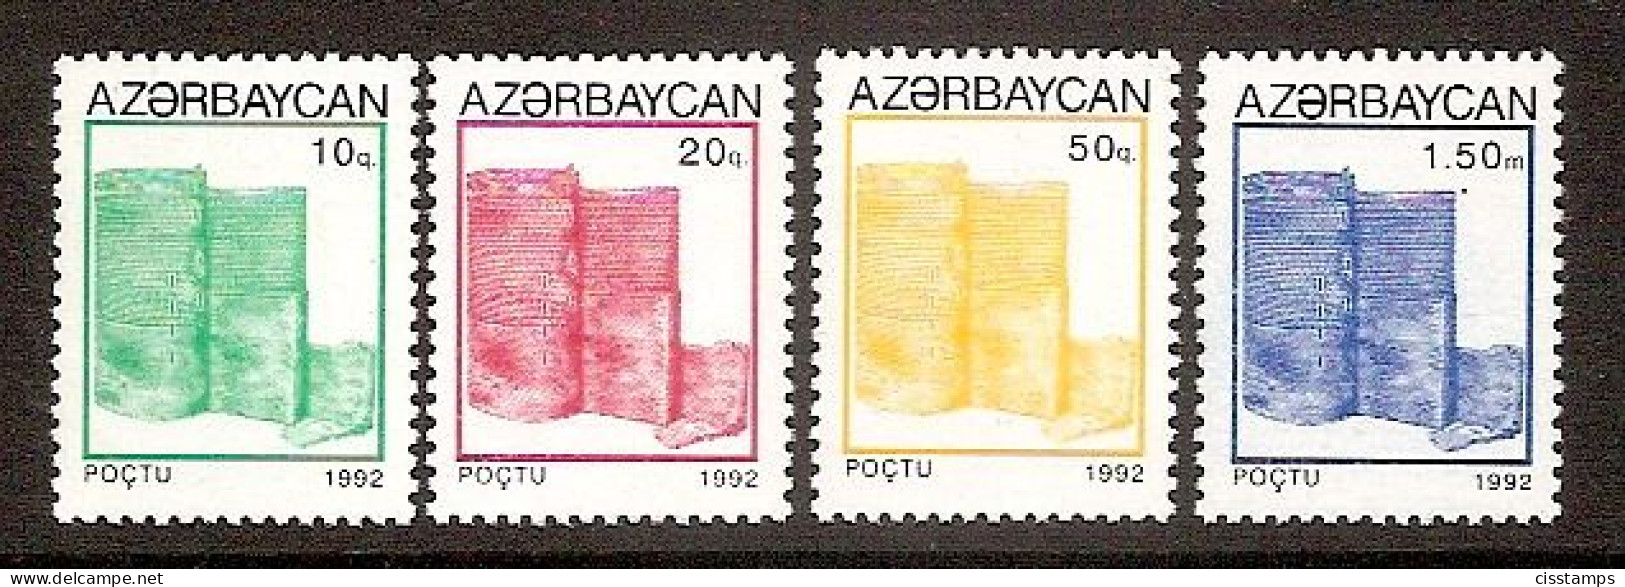 Azerbaijan 1992●Definitives●Tower Architecture●●Freimarken●Turm●Mi75-78 MNH - Azerbaiján